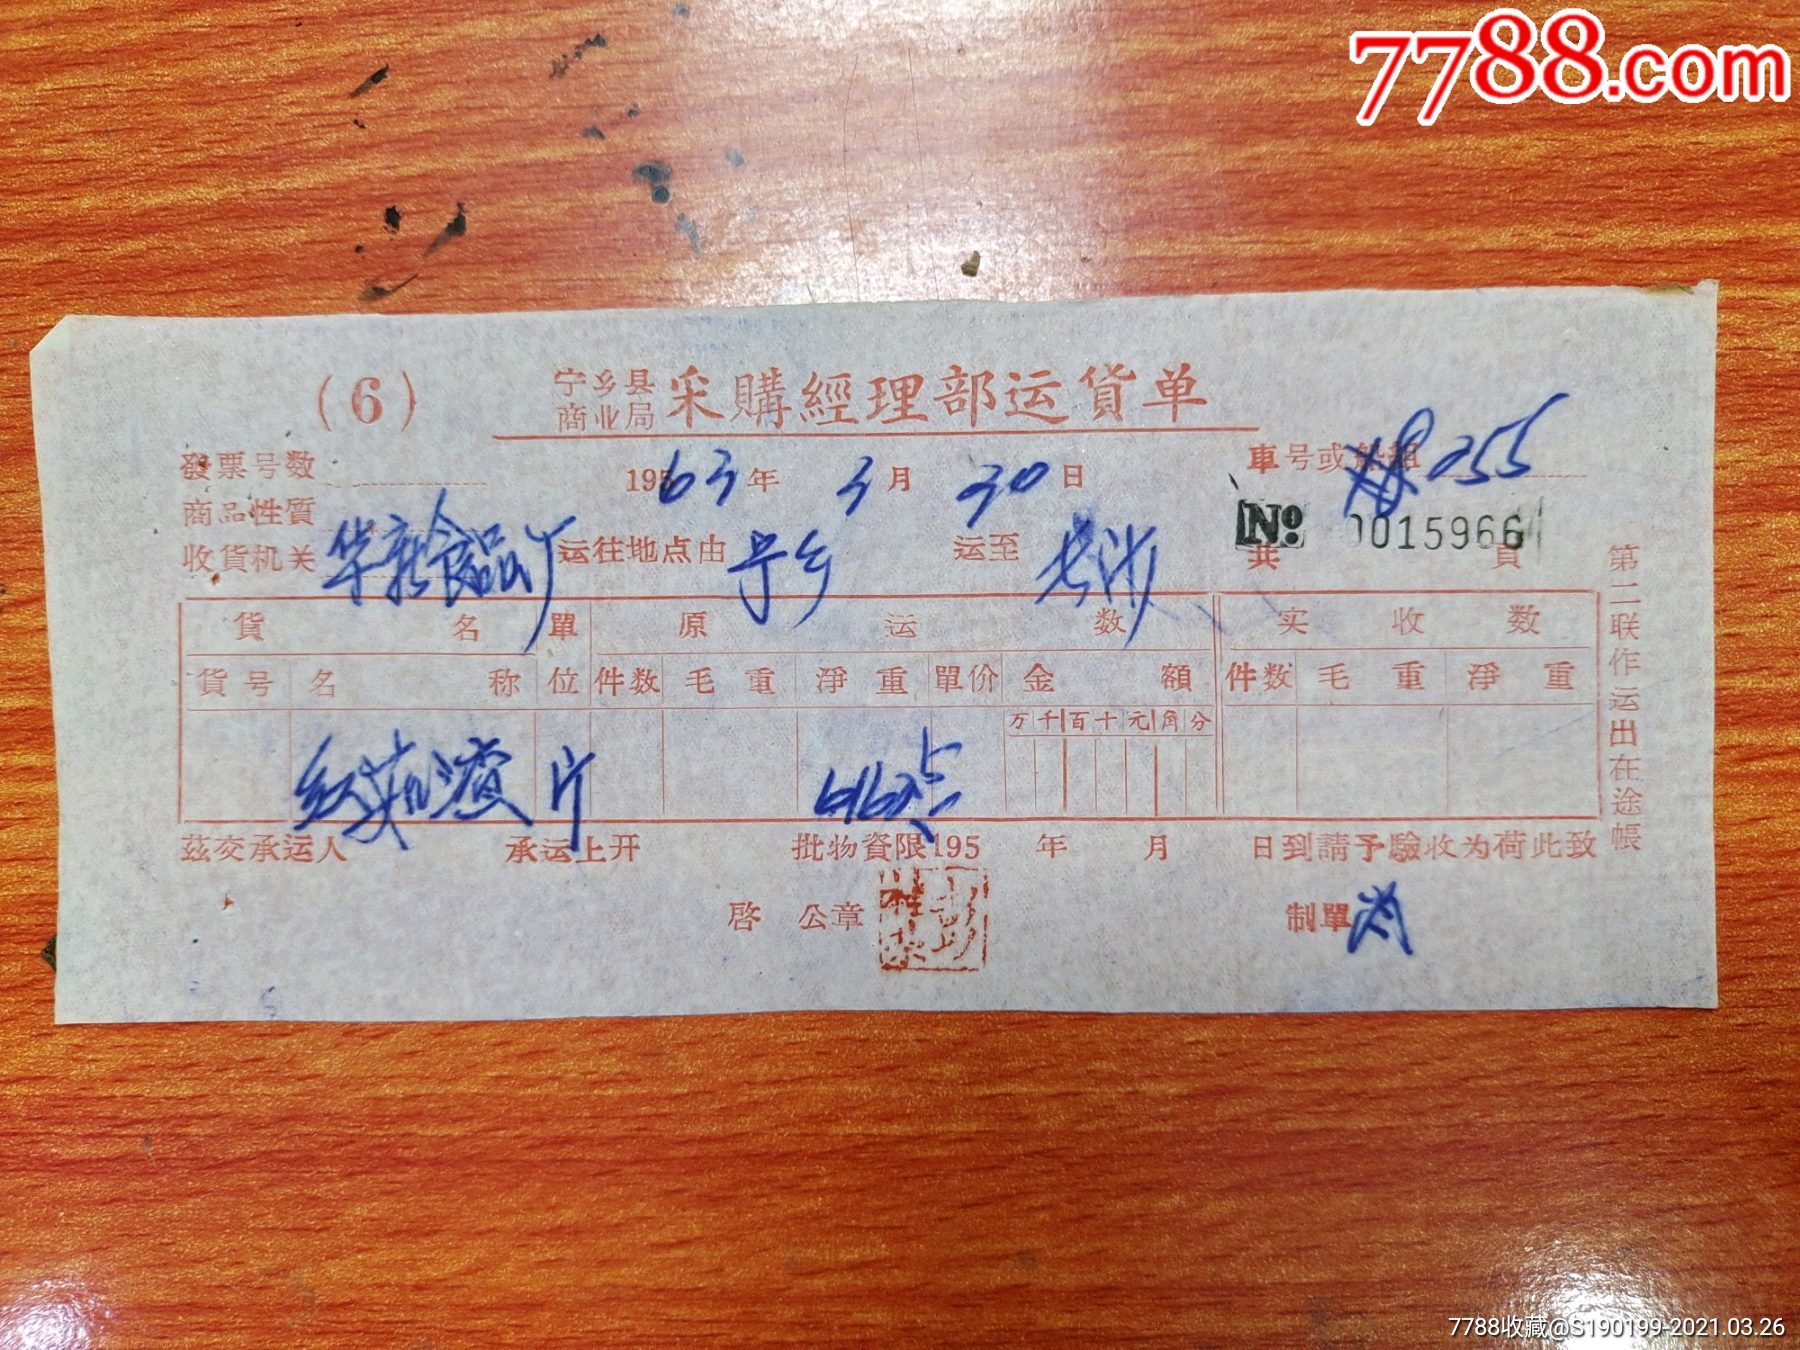 宁乡县商业局采购经理部运货单no0015966